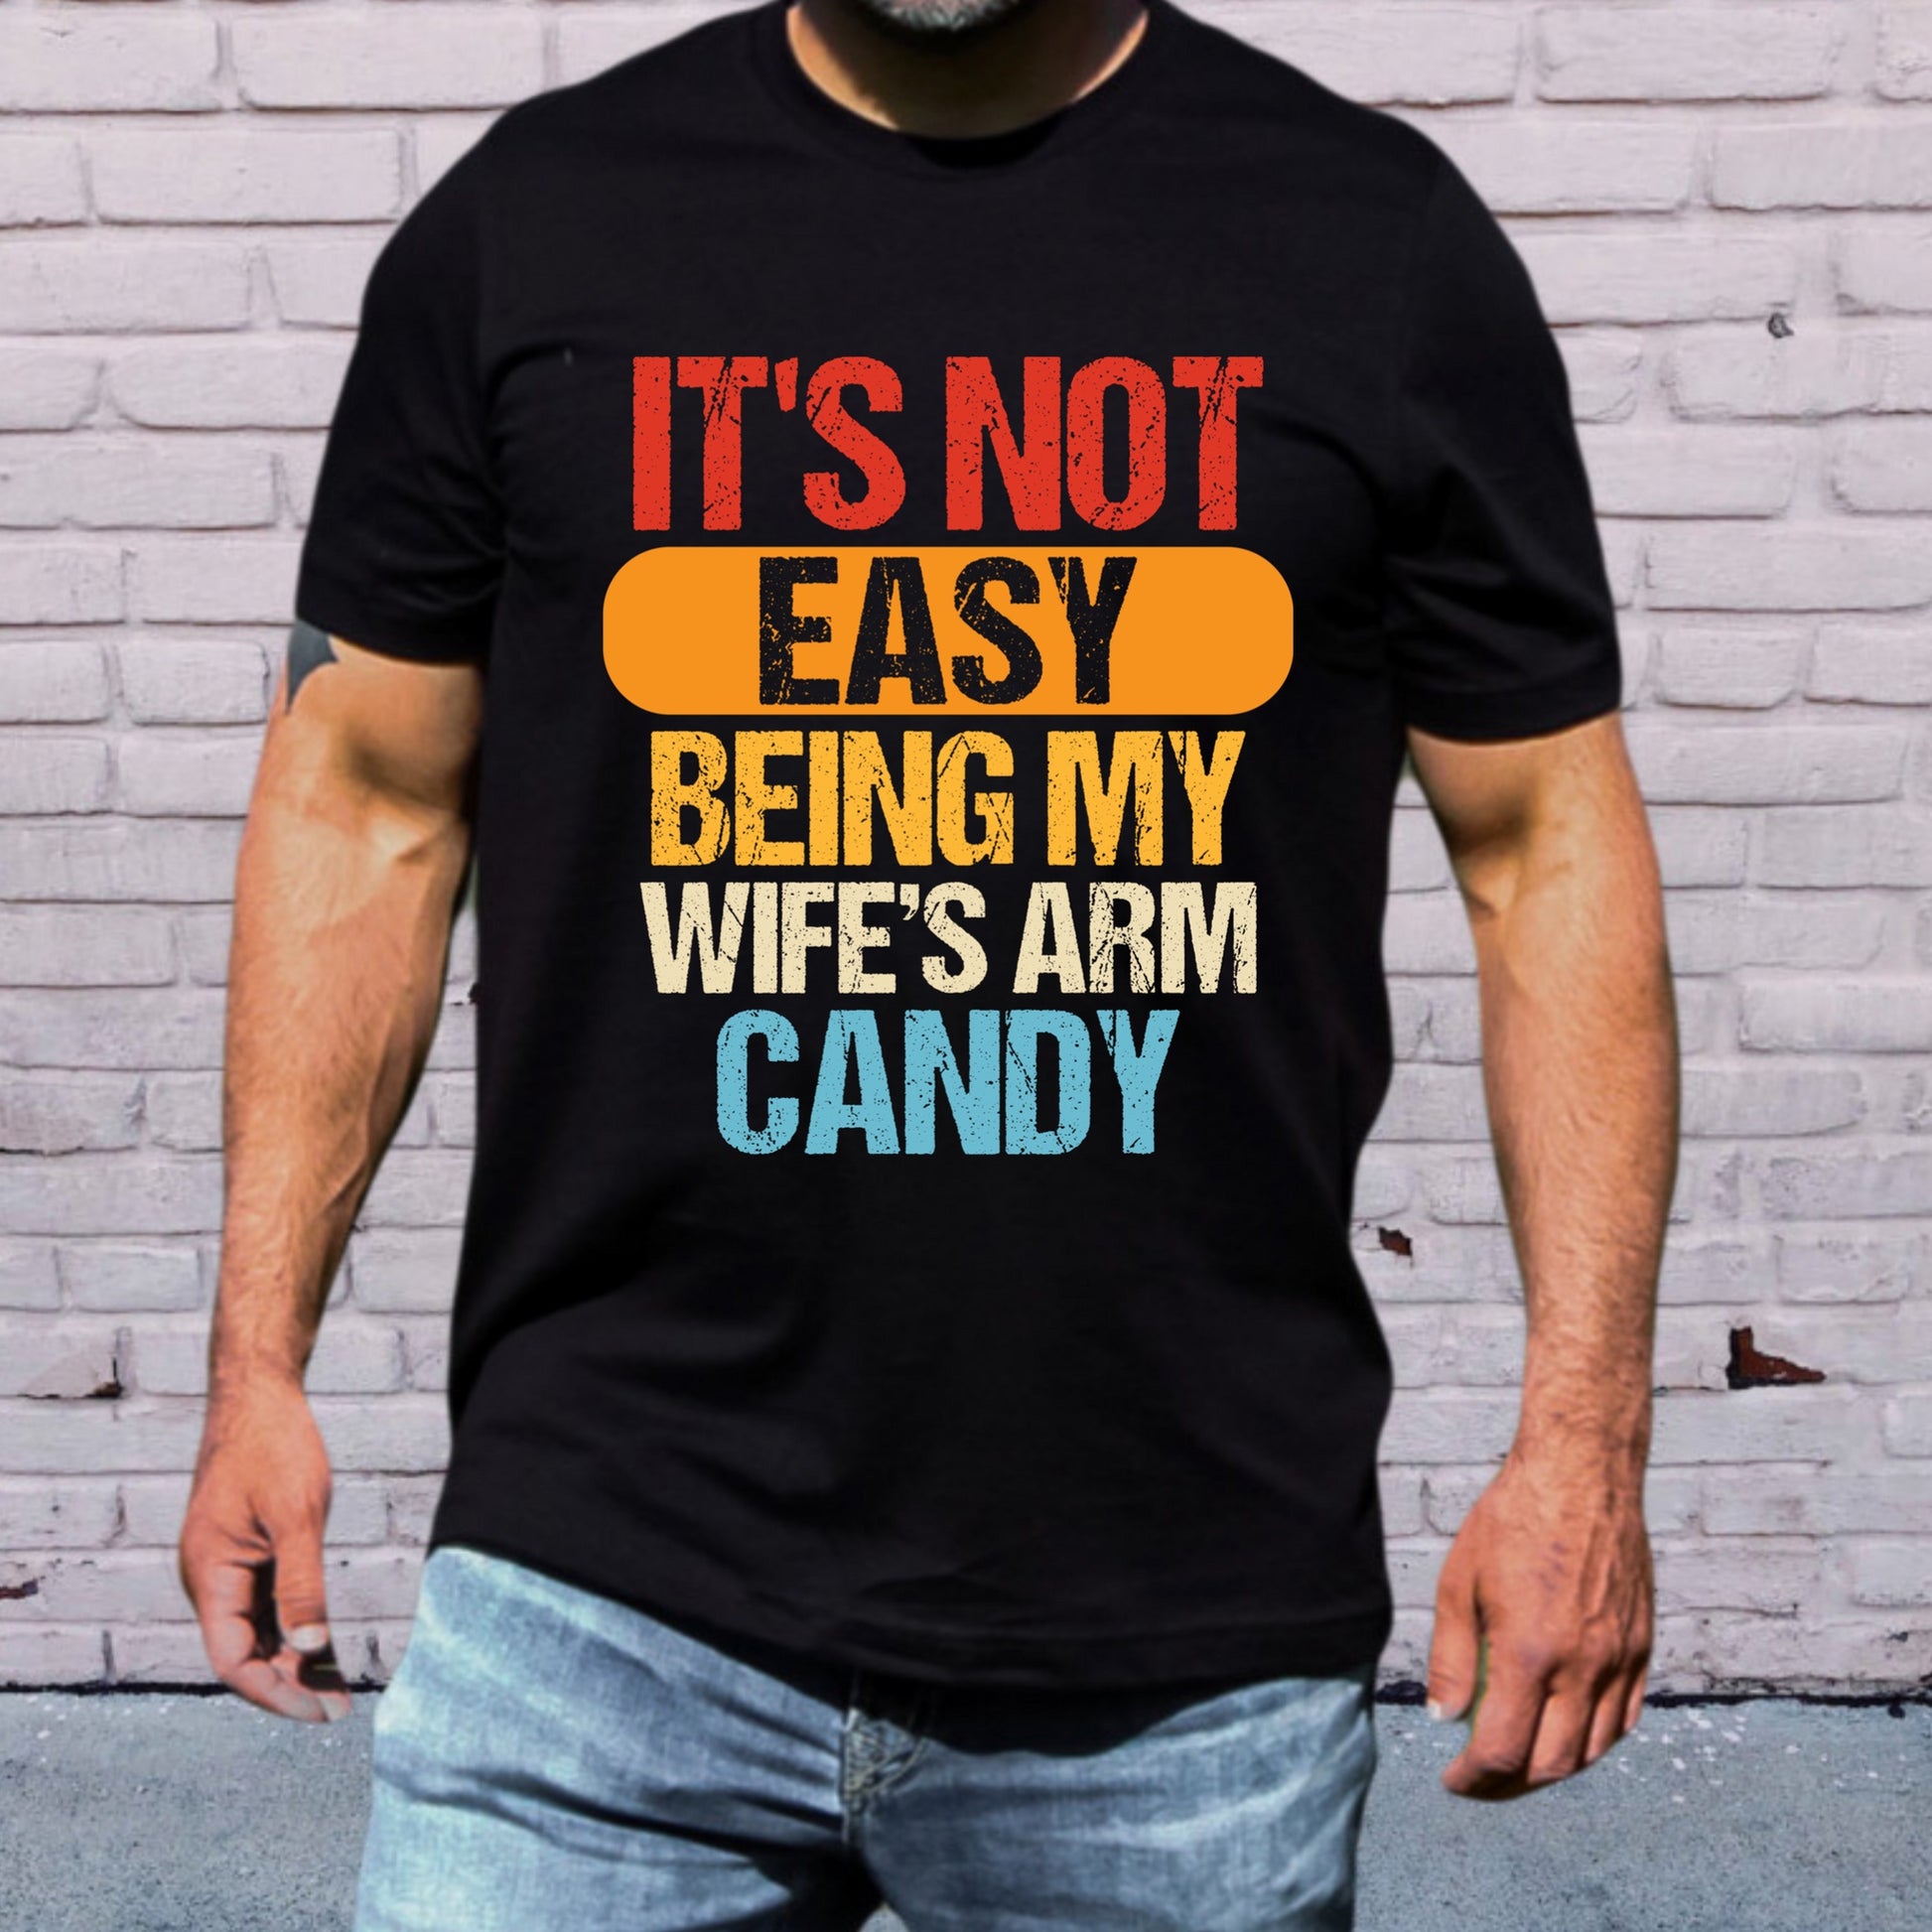 Kids Kit: Arm Candy!